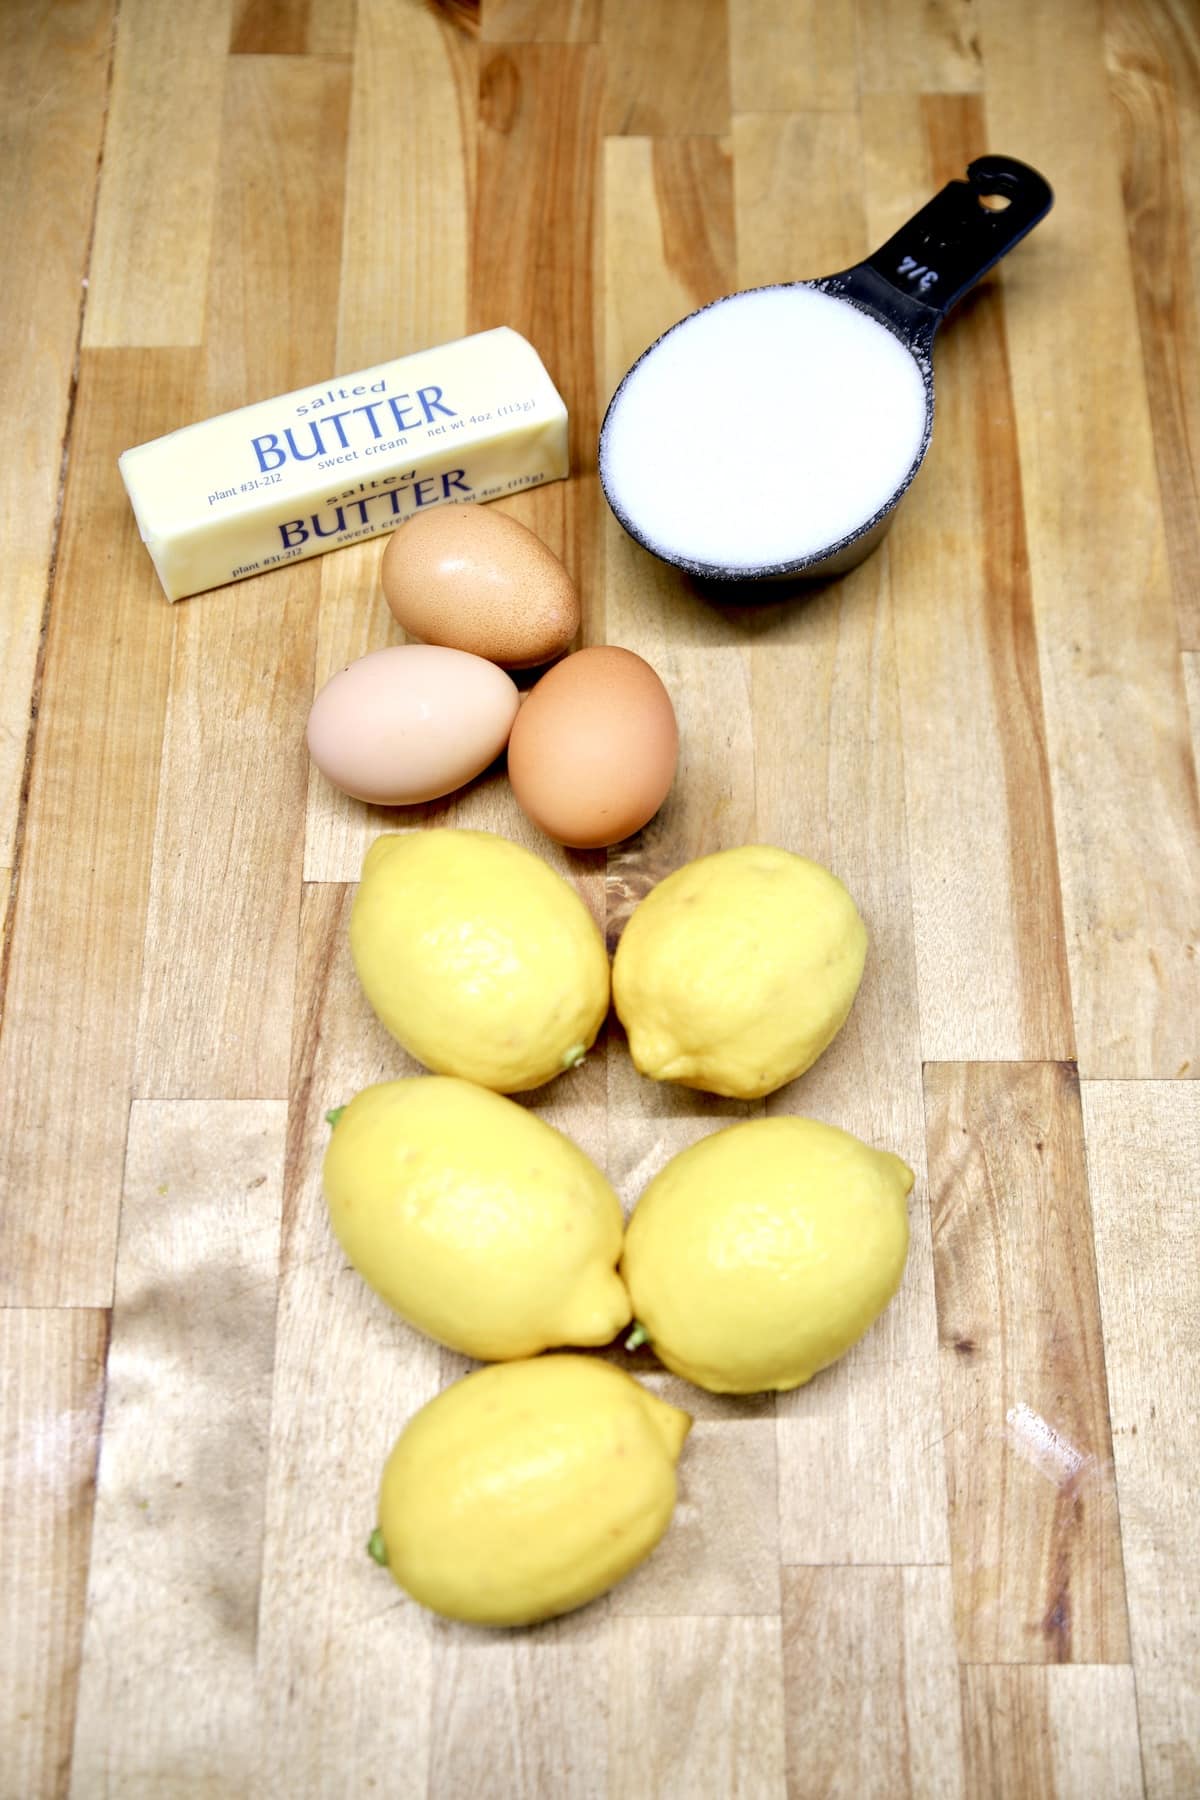 Ingredients for lemon curd: butter, sugar, eggs, lemons.